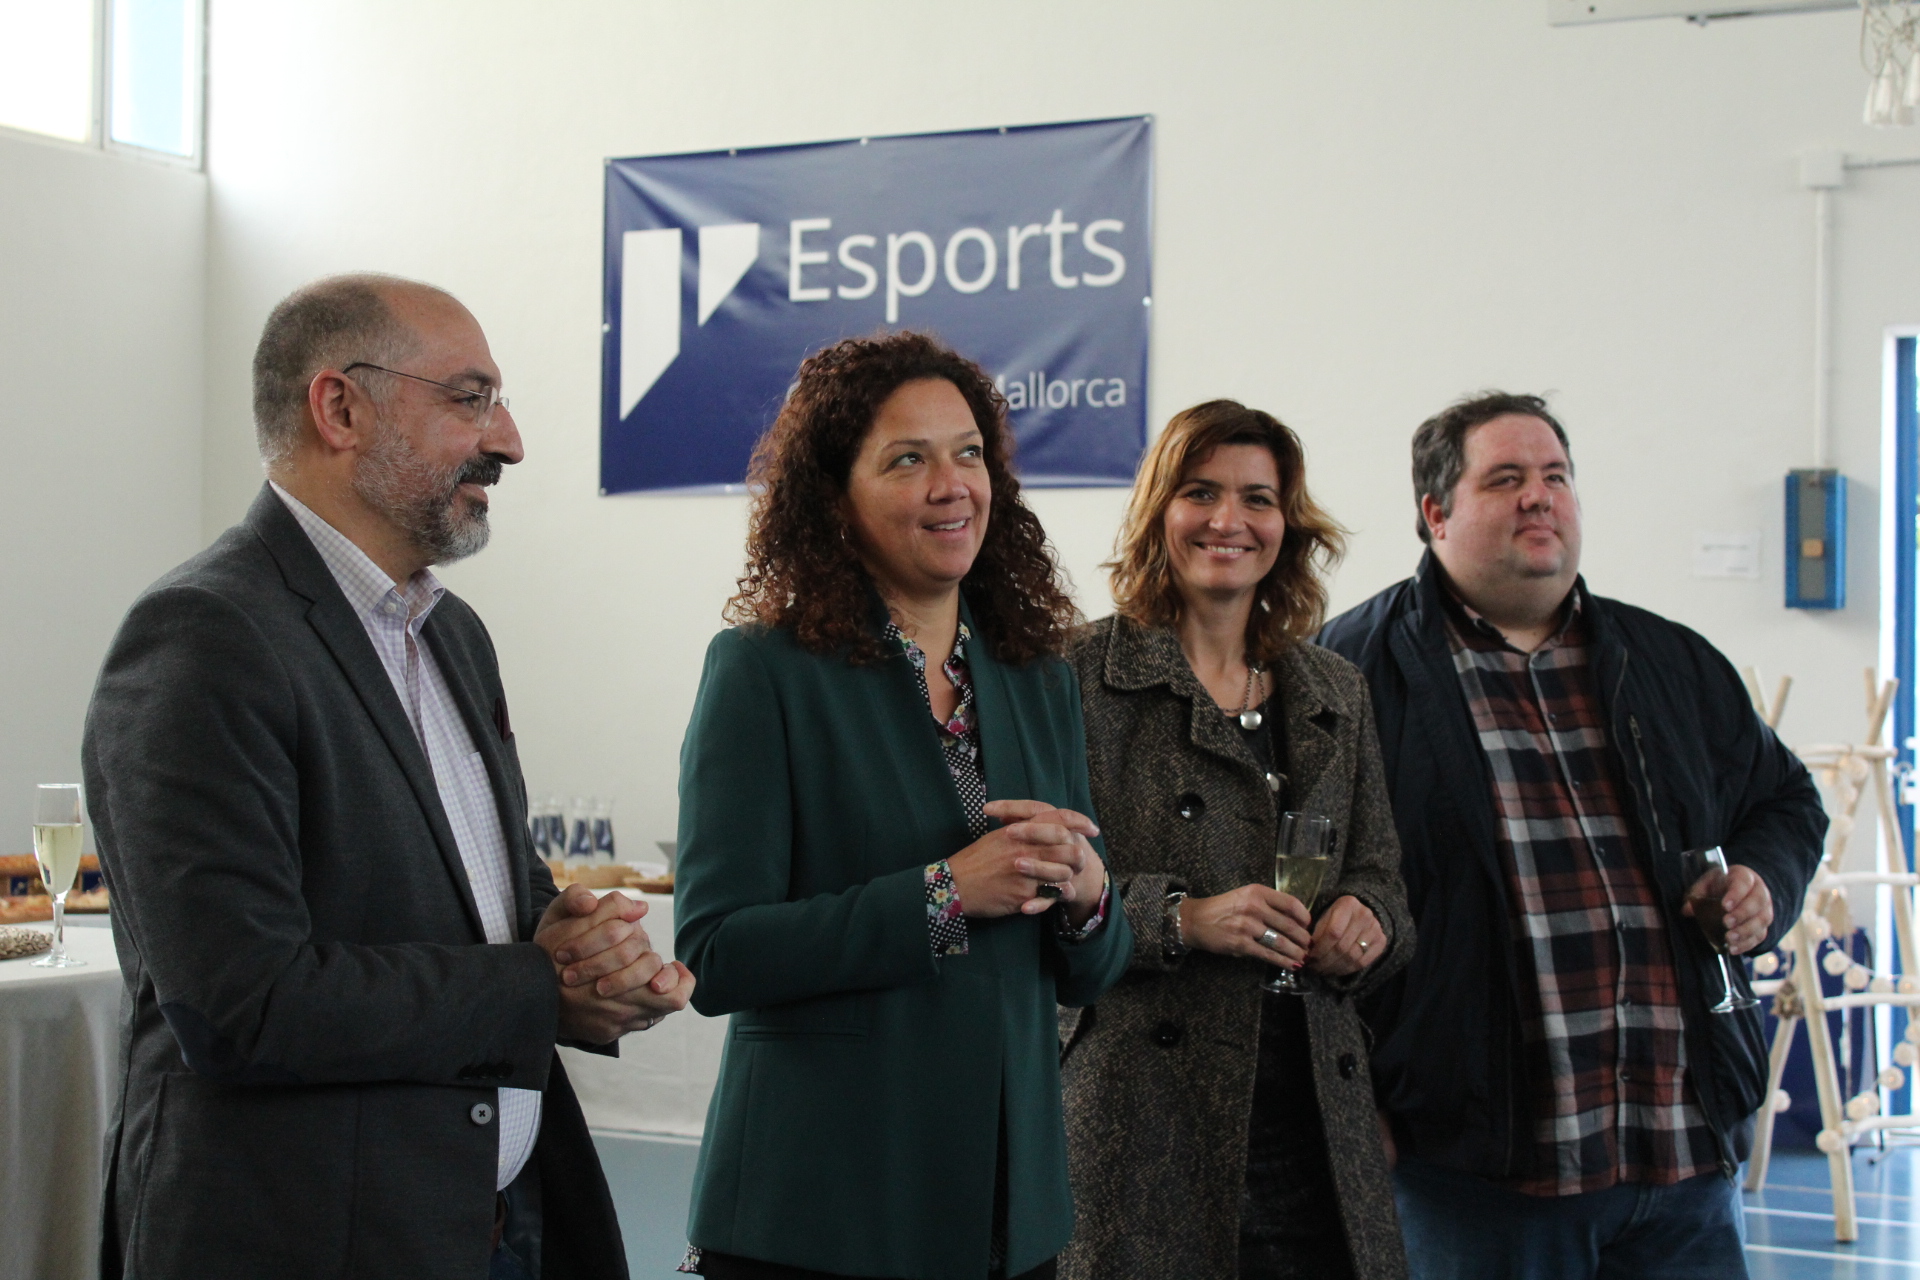 La presidenta Catalina Cladera amb el conseller de Turisme i Esports, Andreu Serra, la Directora insular d’Esports, Marga Portells, i el secretari tècnic del Departament, Joan Gaspar.